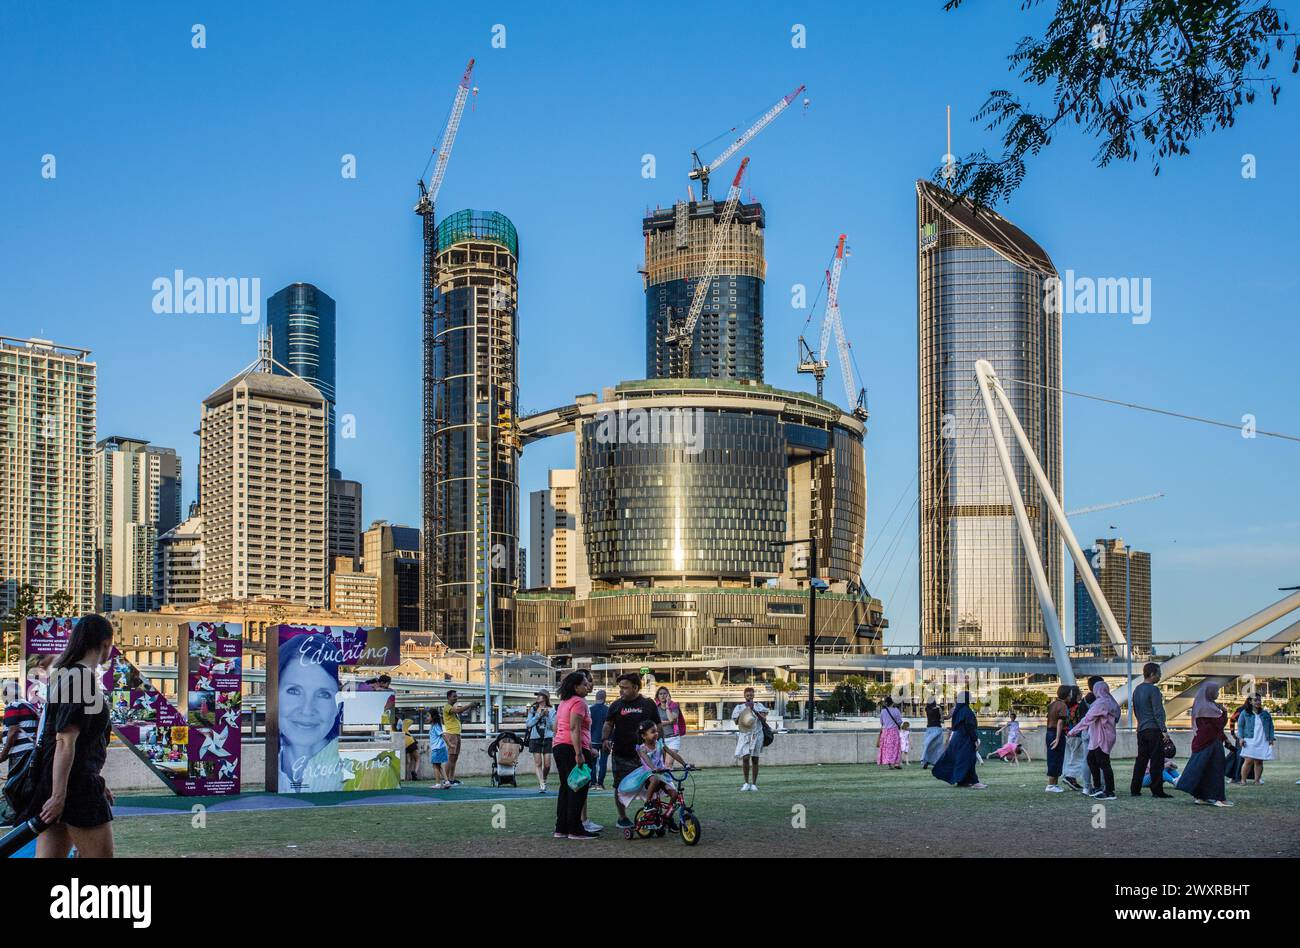 Queen's Wharf, quartiere residenziale polifunzionale e di intrattenimento nella fase finale della costruzione, visto da Southbank Parklands, Brisbane, Qu Foto Stock